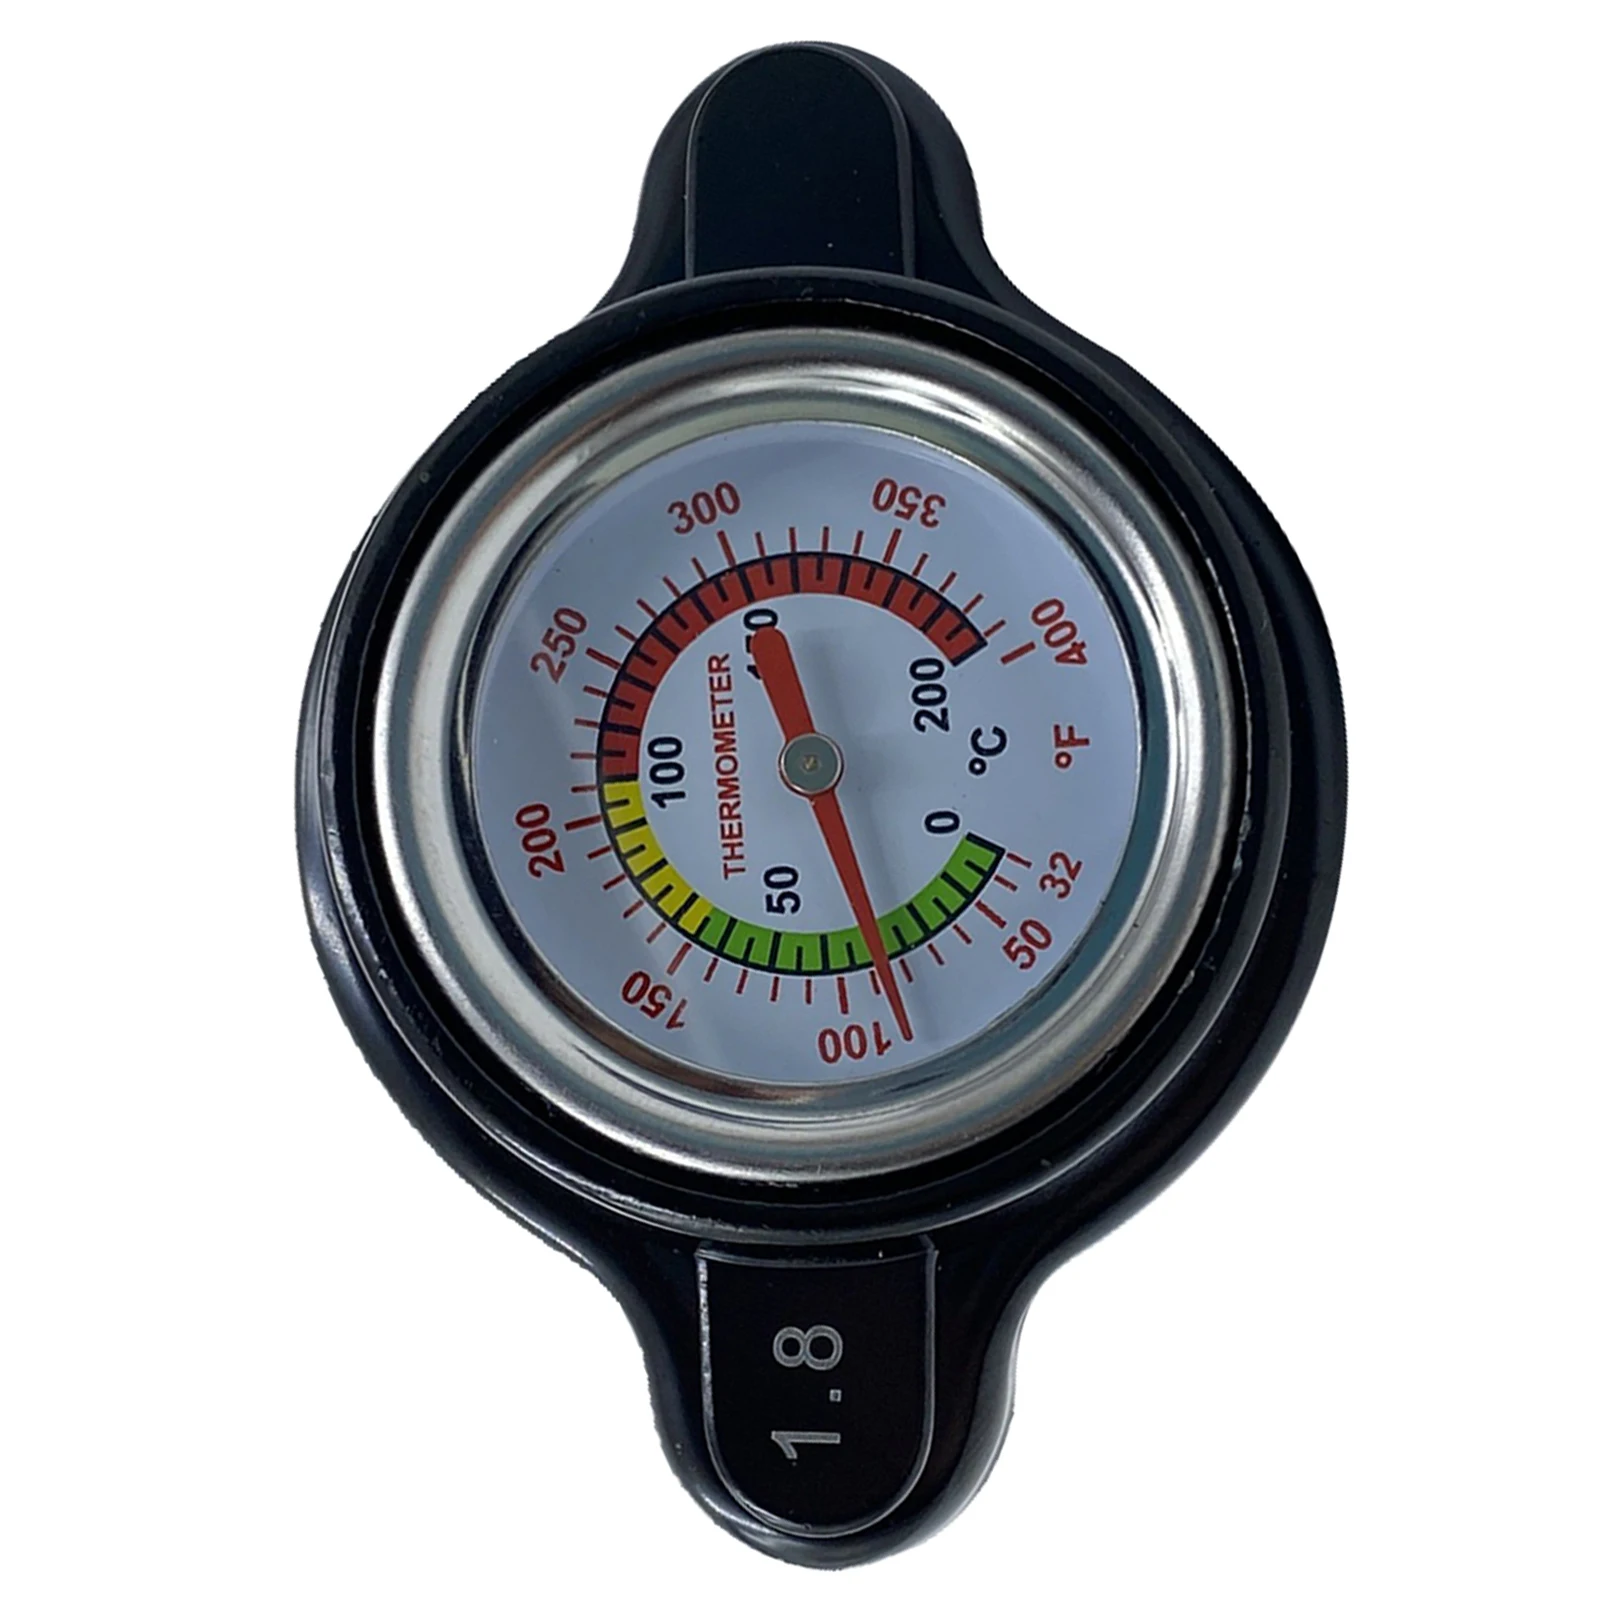 

High Pressure Radiator with Temperature Gauge, 1.8 Bar Radiator 25.6Psi for Honda CRF450R 2002-2015